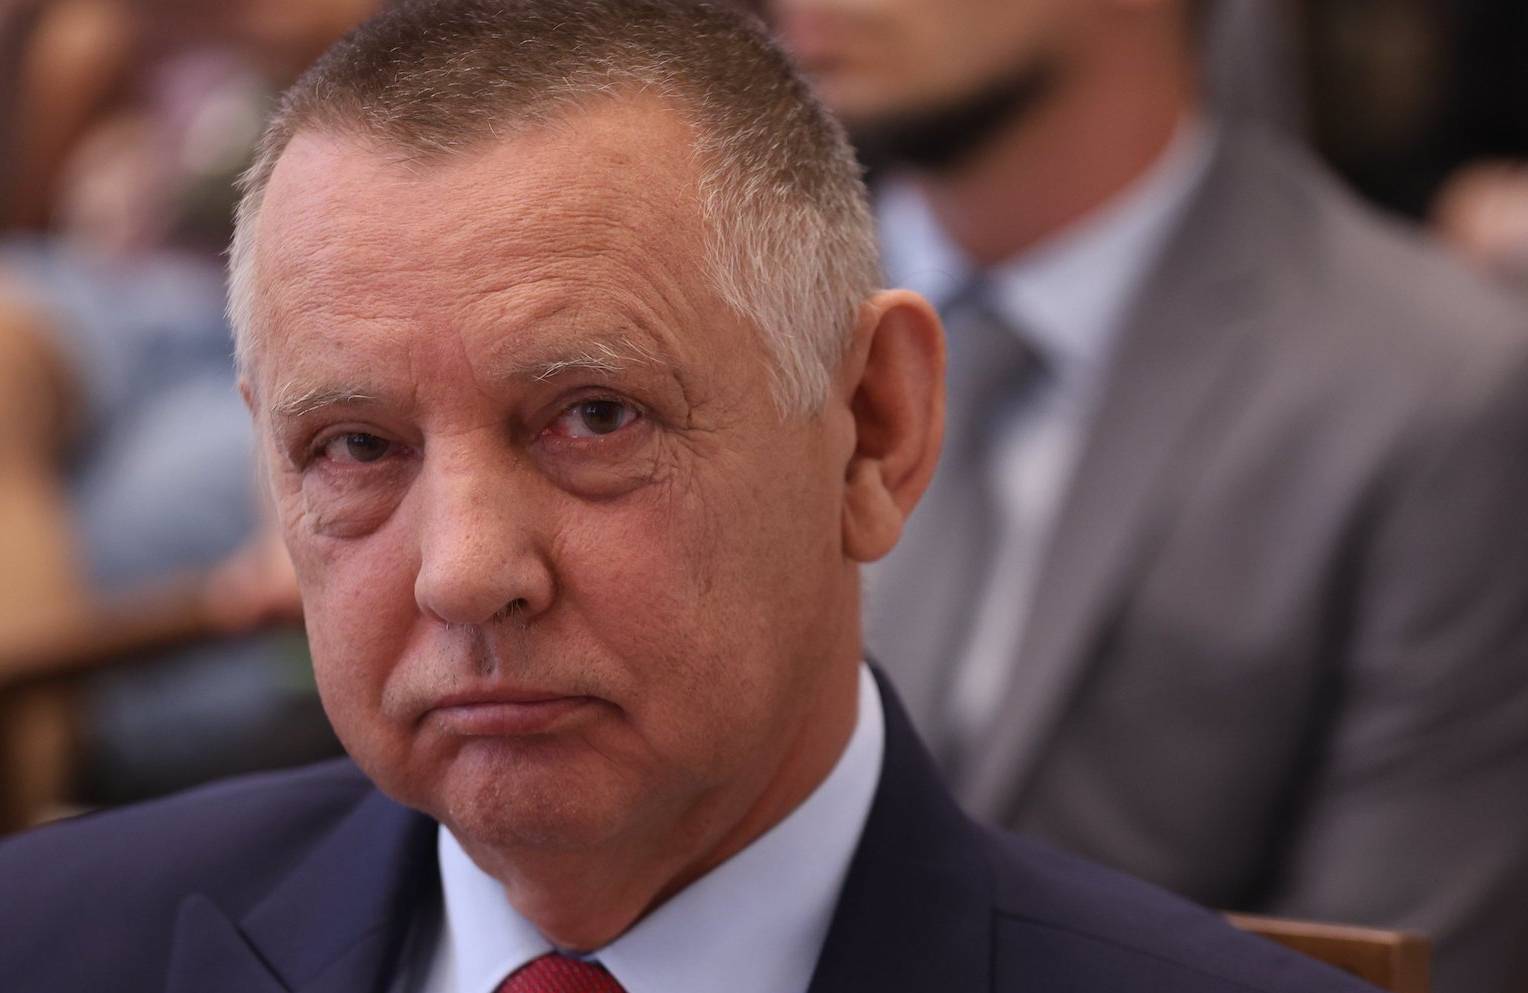 Prezes NIK Marian Banaś w garniturze i czerwonym krawacie spogląda groźnym wzrokiem w kamerę.